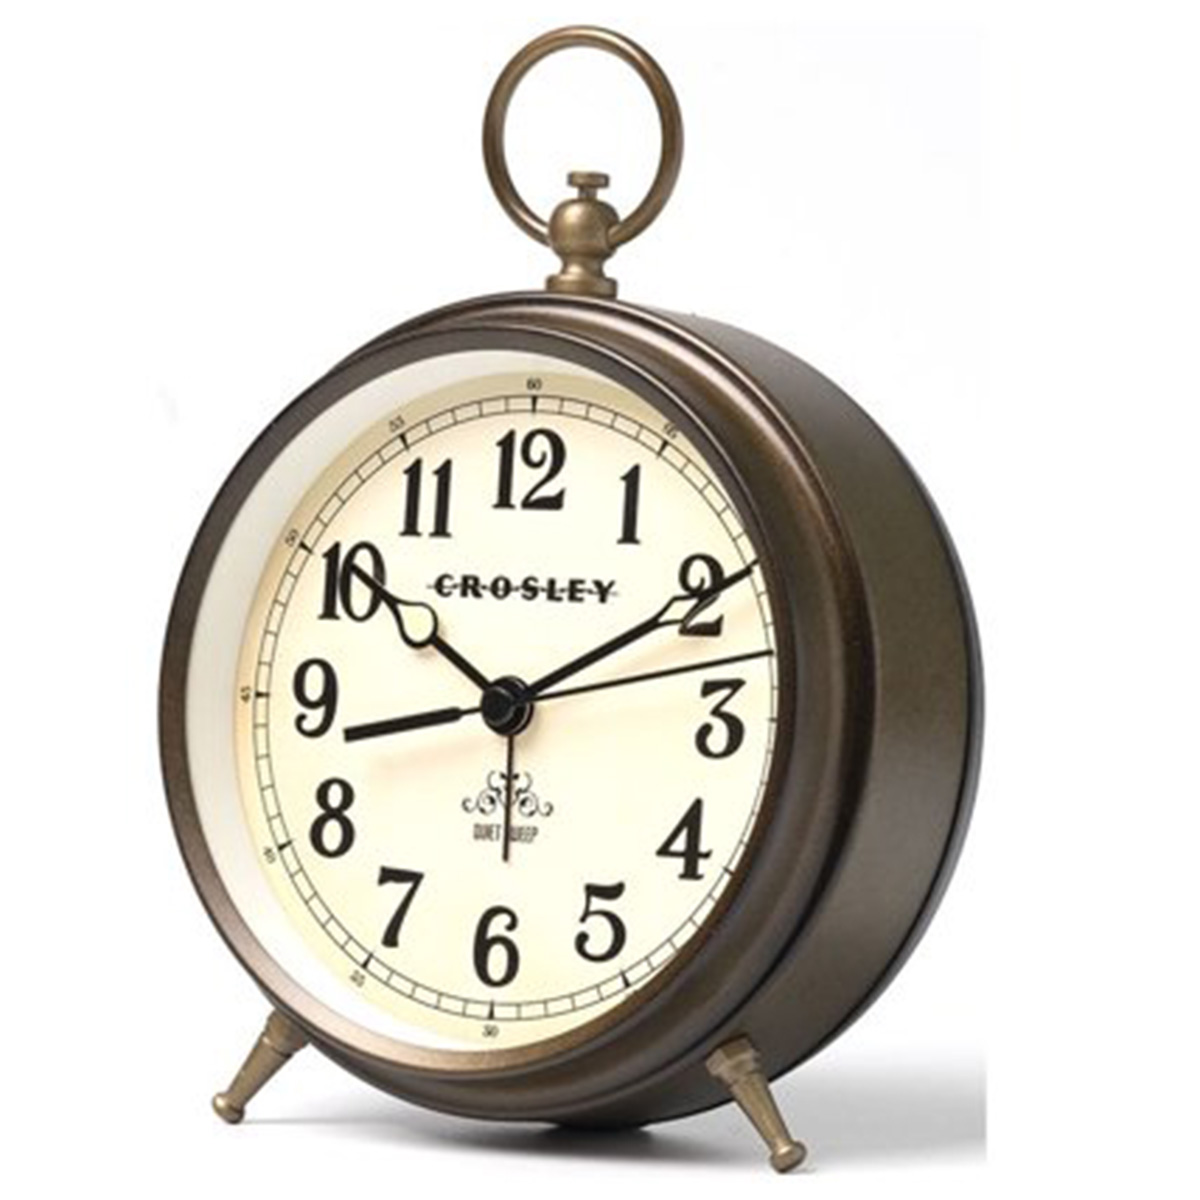 Crosley Vintage Alarm Clock